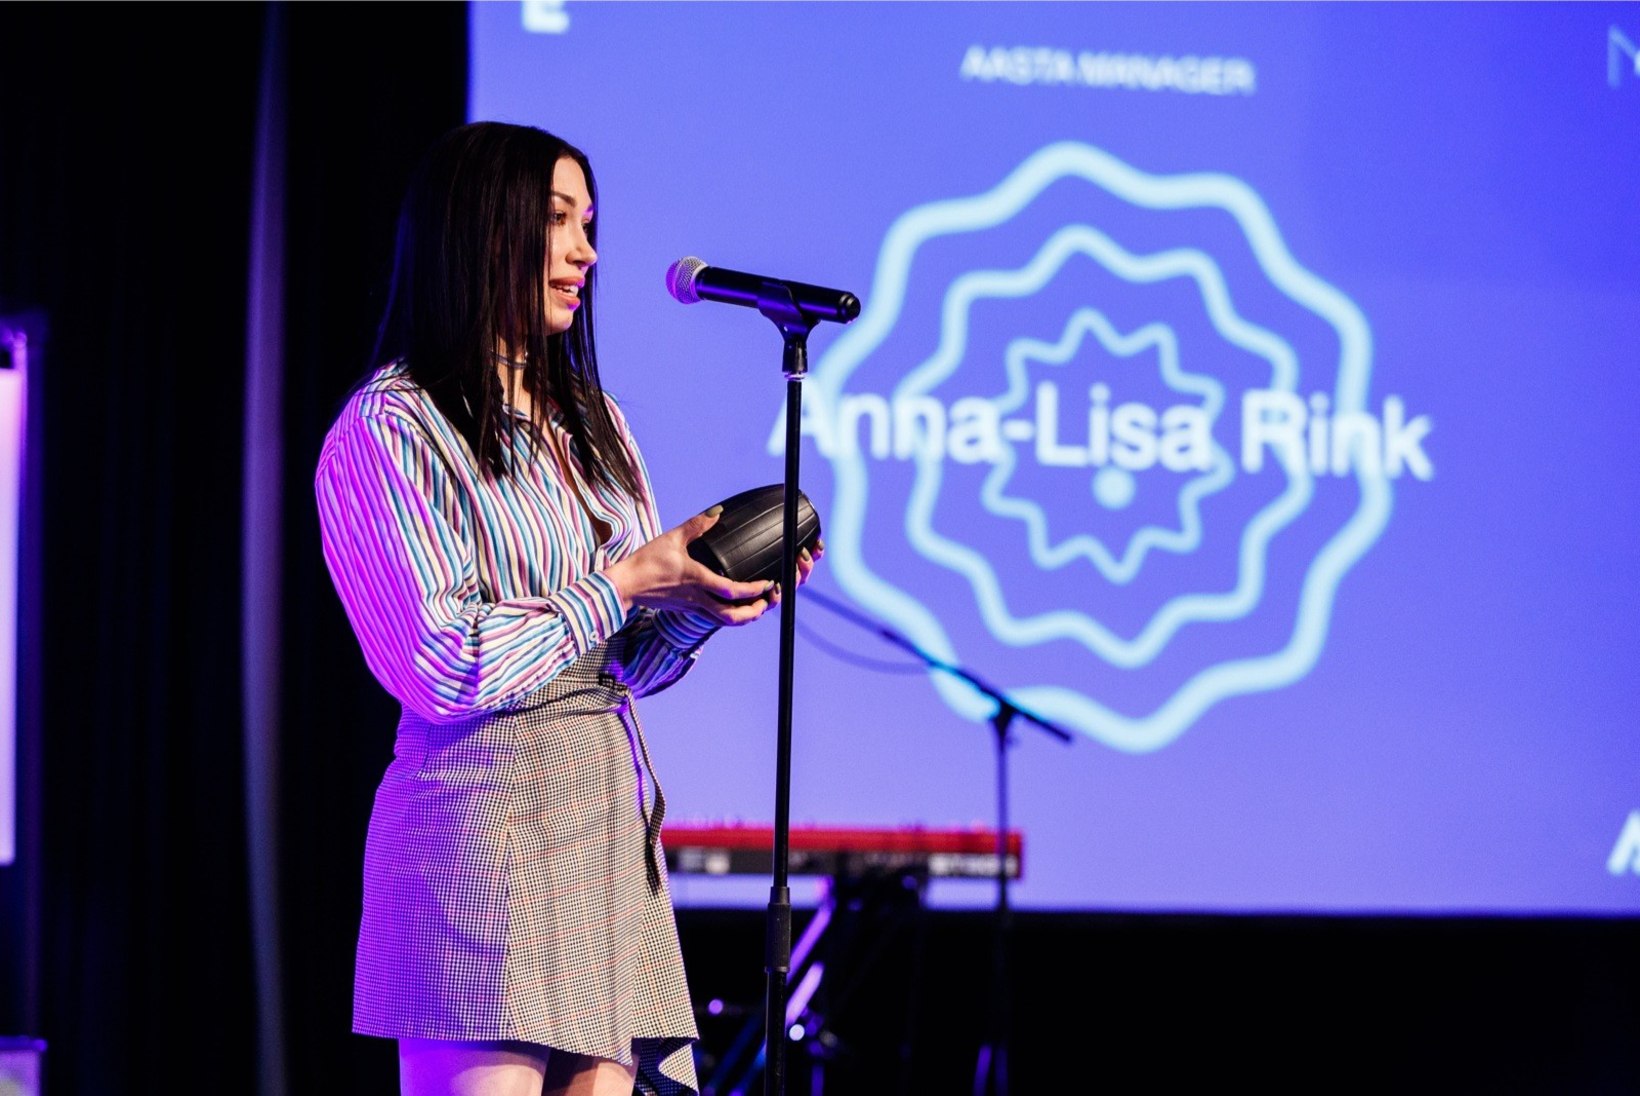 Aasta mänedžer Anna-Lisa Himma: ma ei ole kunagi mõelnud artistist kui tootest